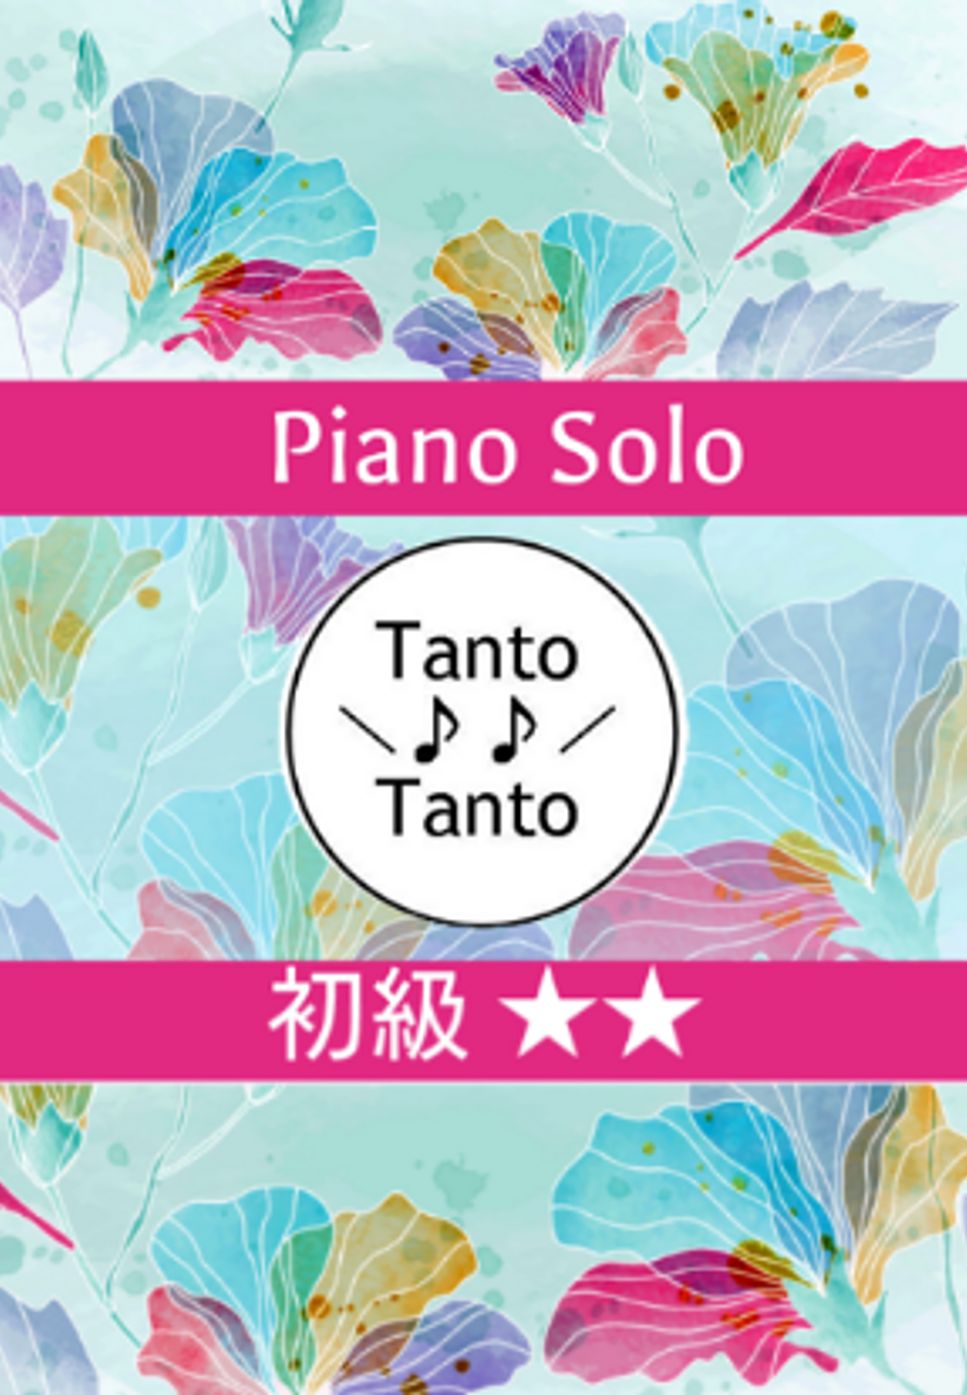 ルートヴィヒ・ヴァン・ベートーヴェン - ROCKIN ODE TO JOY ロッキン よろこびの歌 (Piano Solo in C) by Tanto Tanto